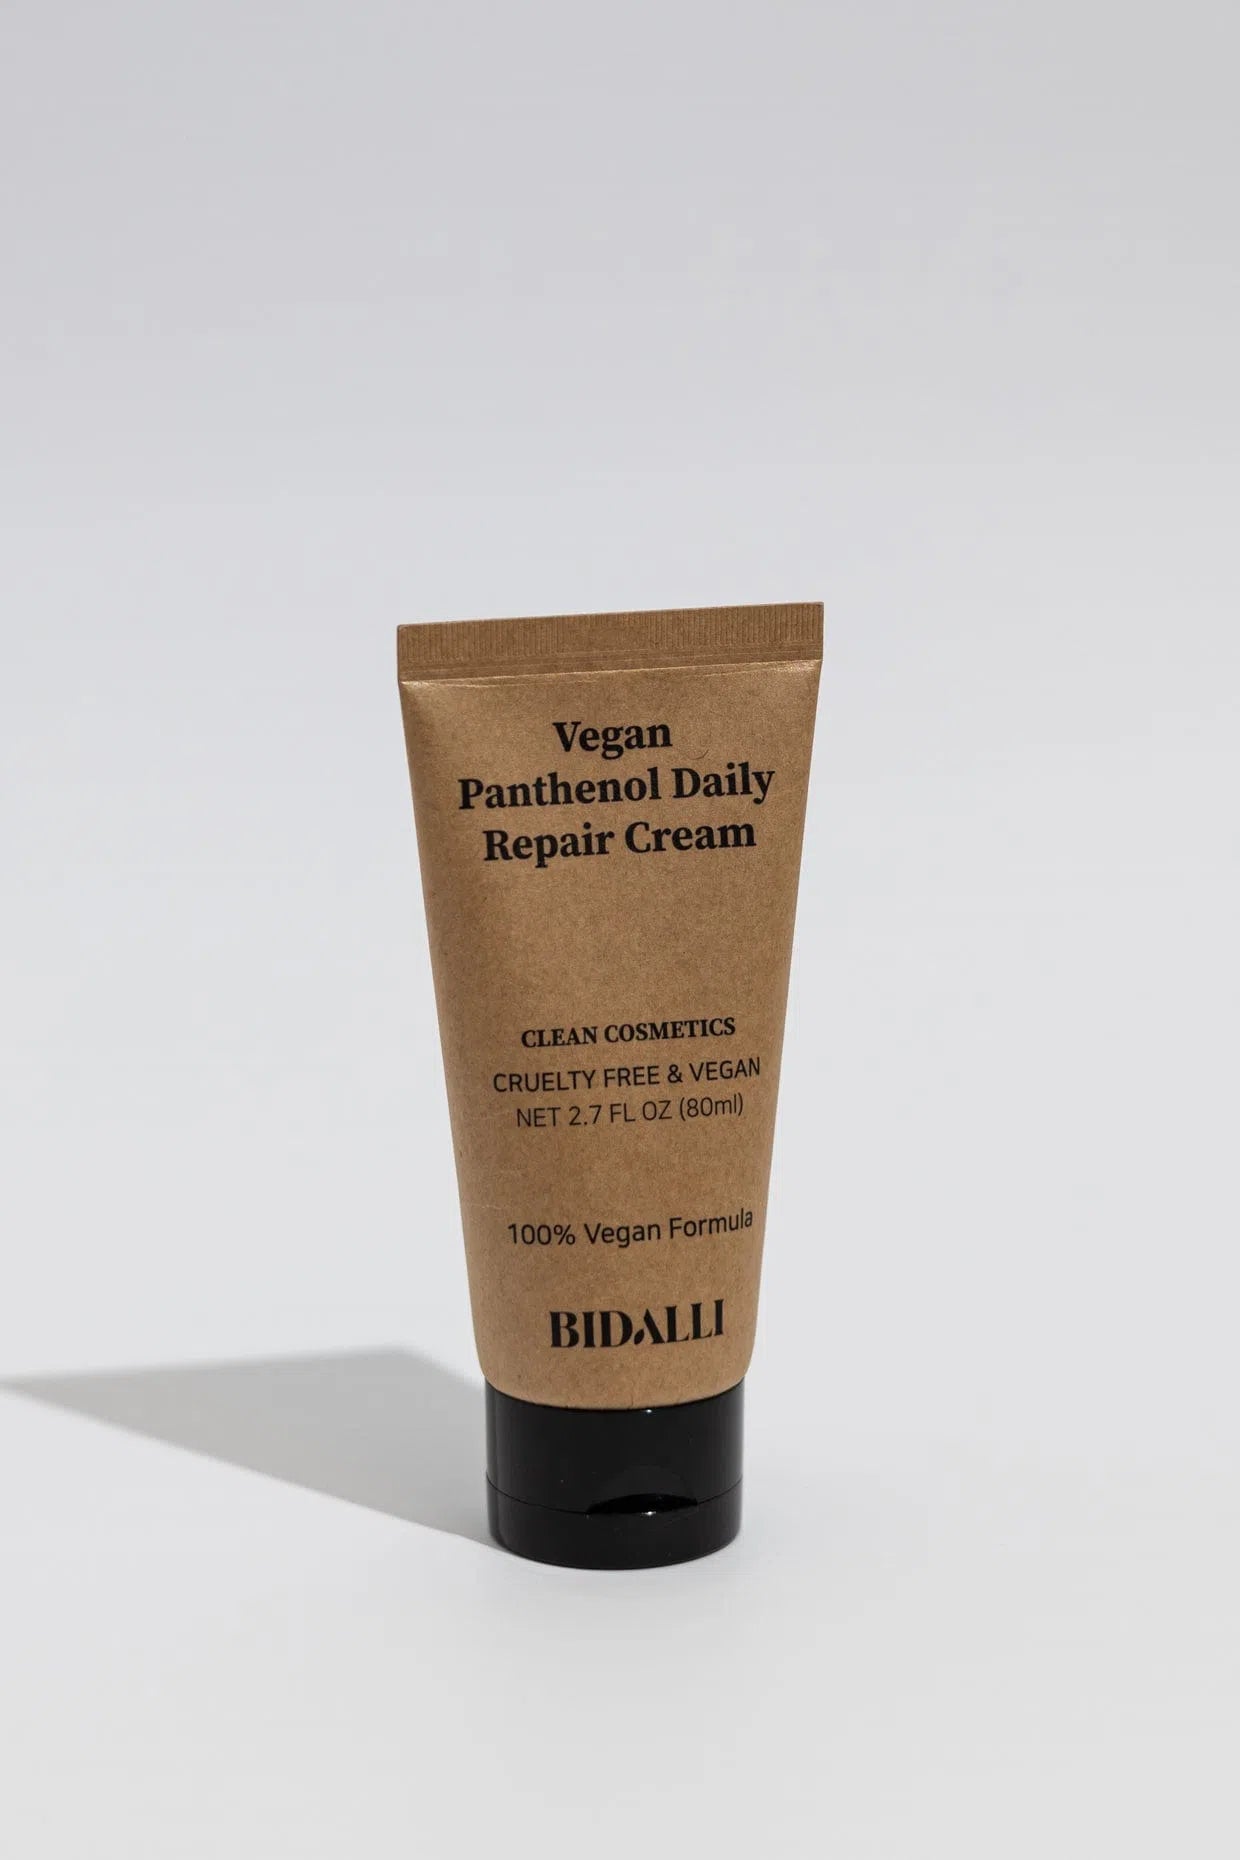 Bidalli Vegan Panthenol Daily Repair Cream